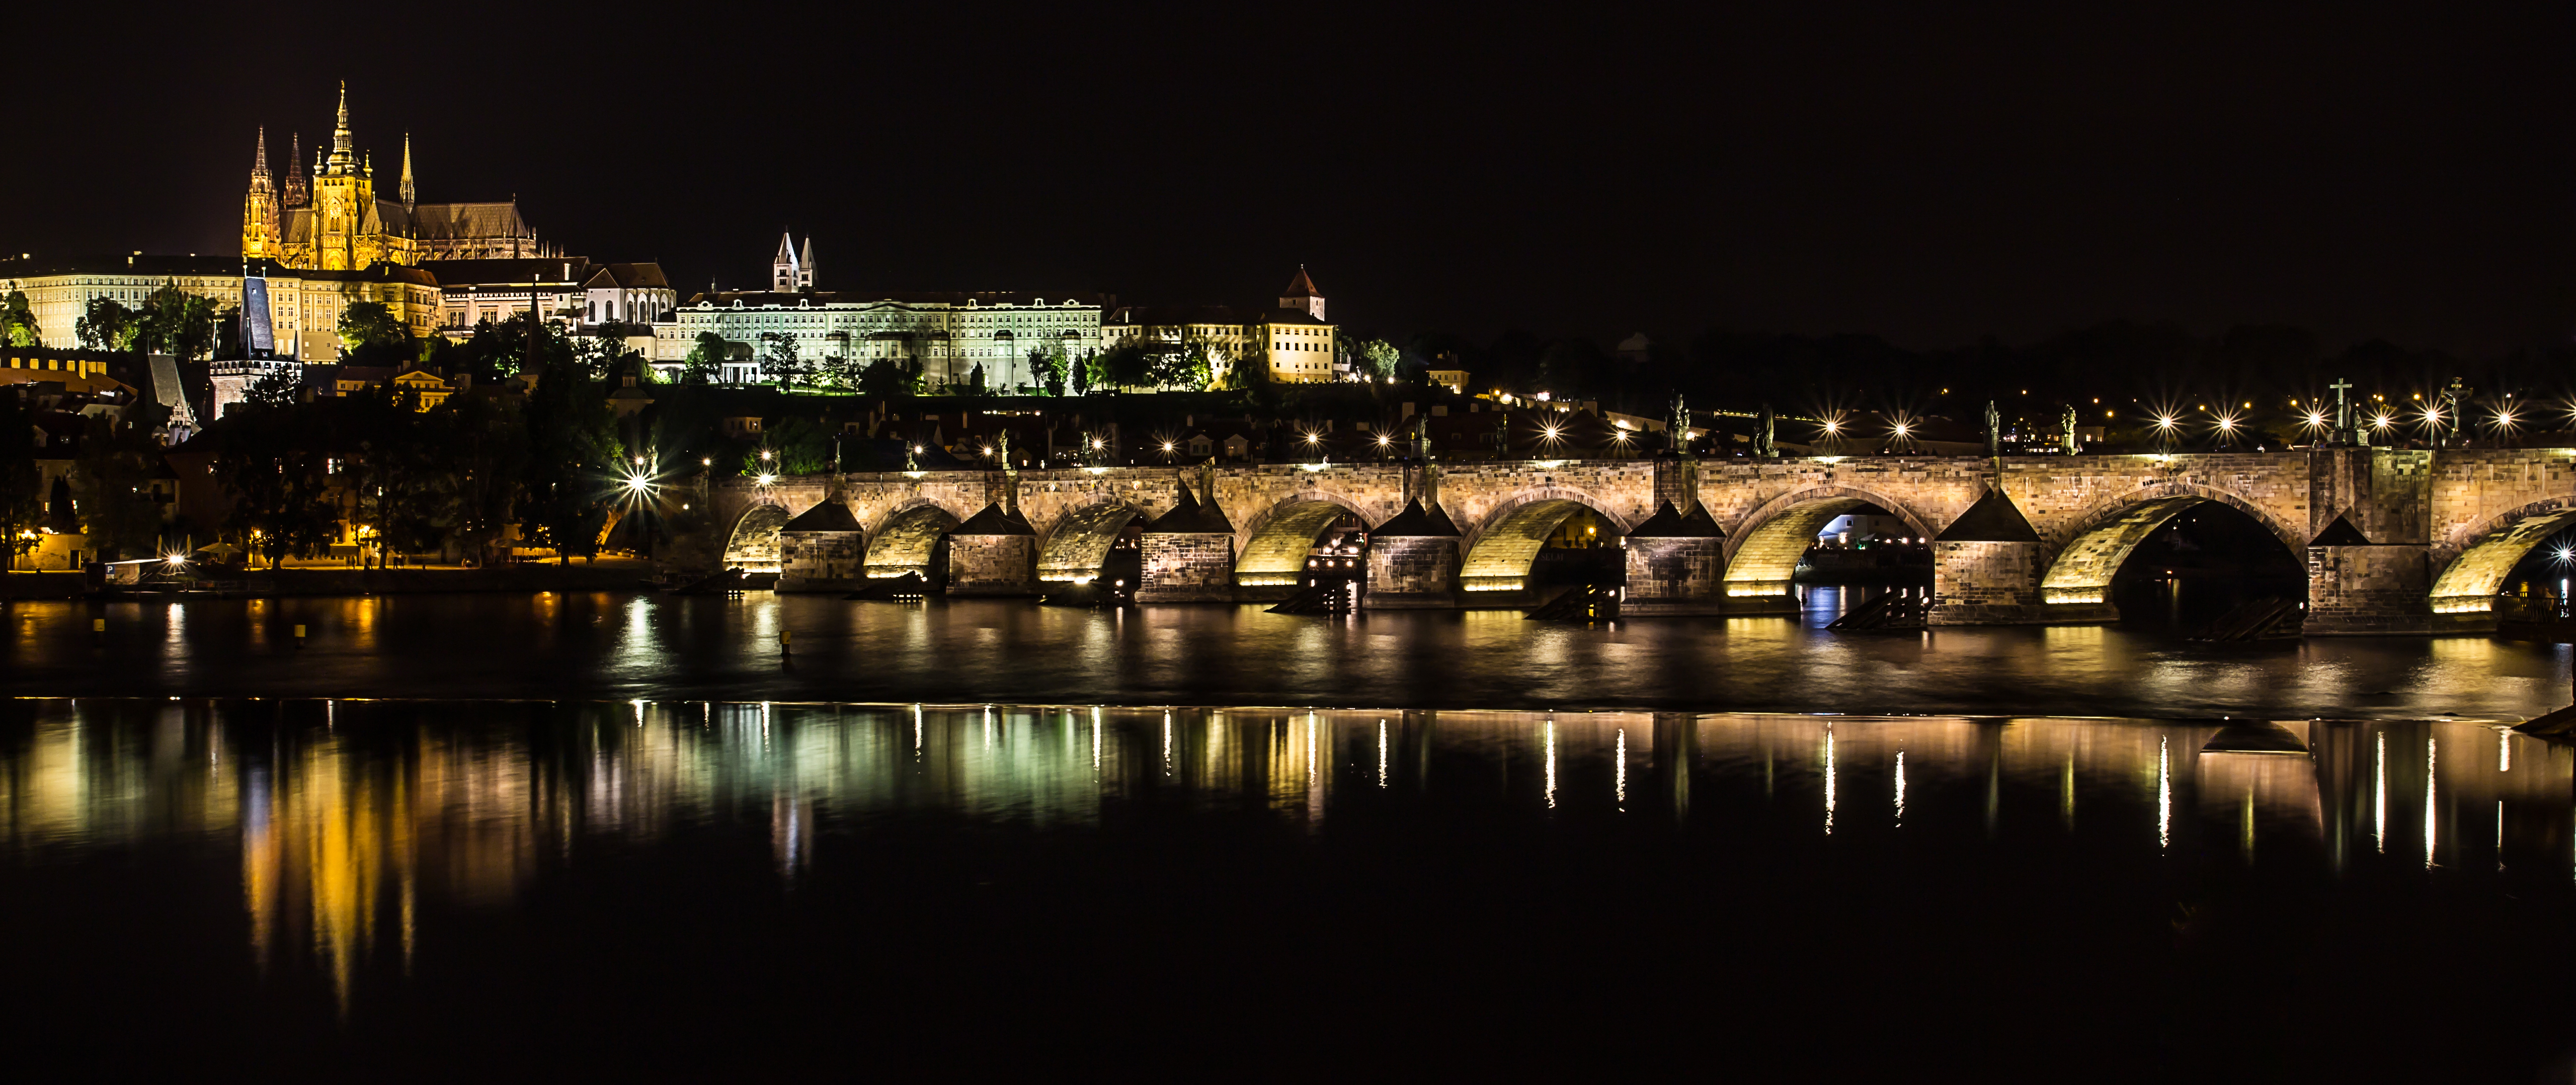 File:Charles Bridge at night - Prague 01.jpg - Wikimedia Commons